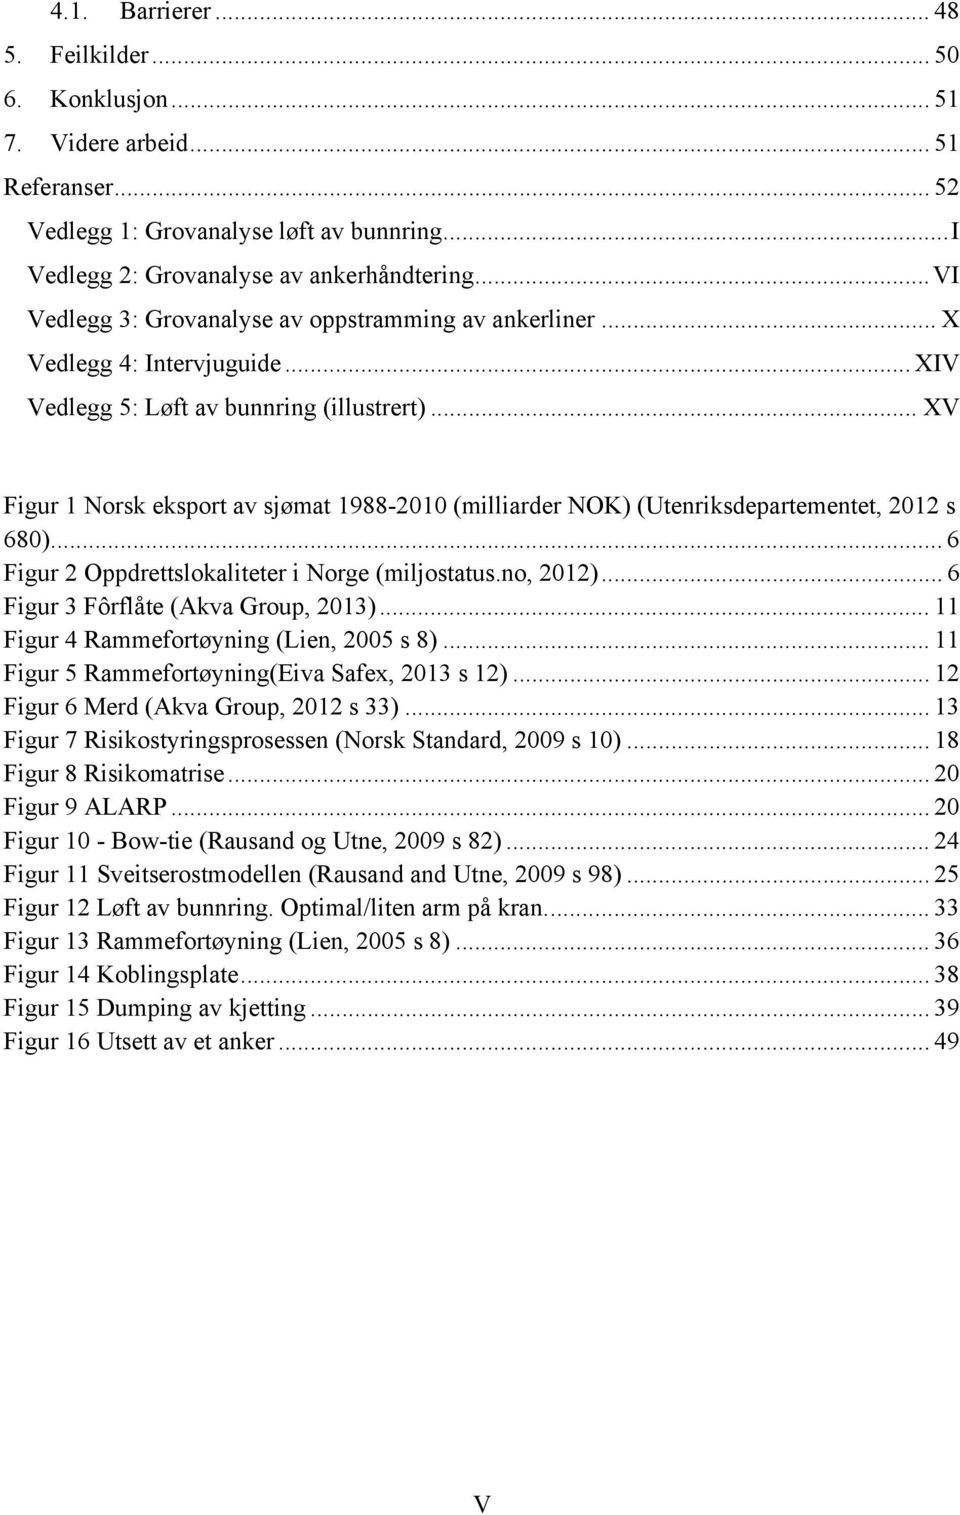 .. XV Figur 1 Norsk eksport av sjømat 1988-2010 (milliarder NOK) (Utenriksdepartementet, 2012 s 680)... 6 Figur 2 Oppdrettslokaliteter i Norge (miljostatus.no, 2012).